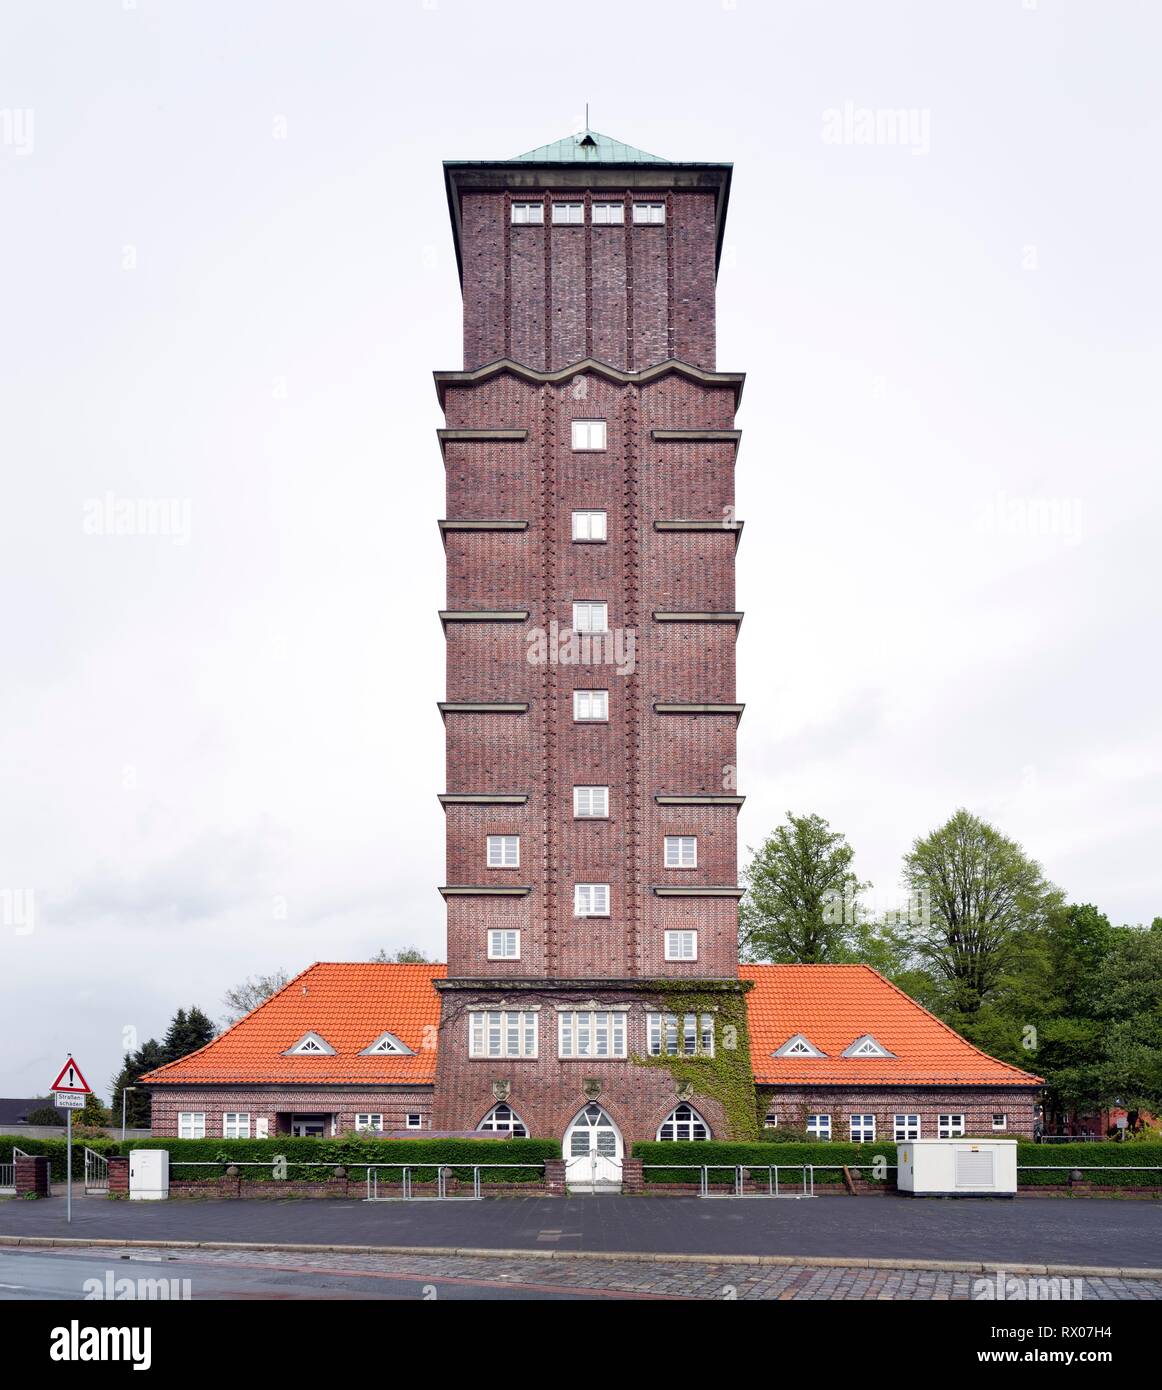 Wasserturm, Baudenkmal, Ziegel, Expressionismus, Blumenthal, Bremen, Deutschland Stockfoto